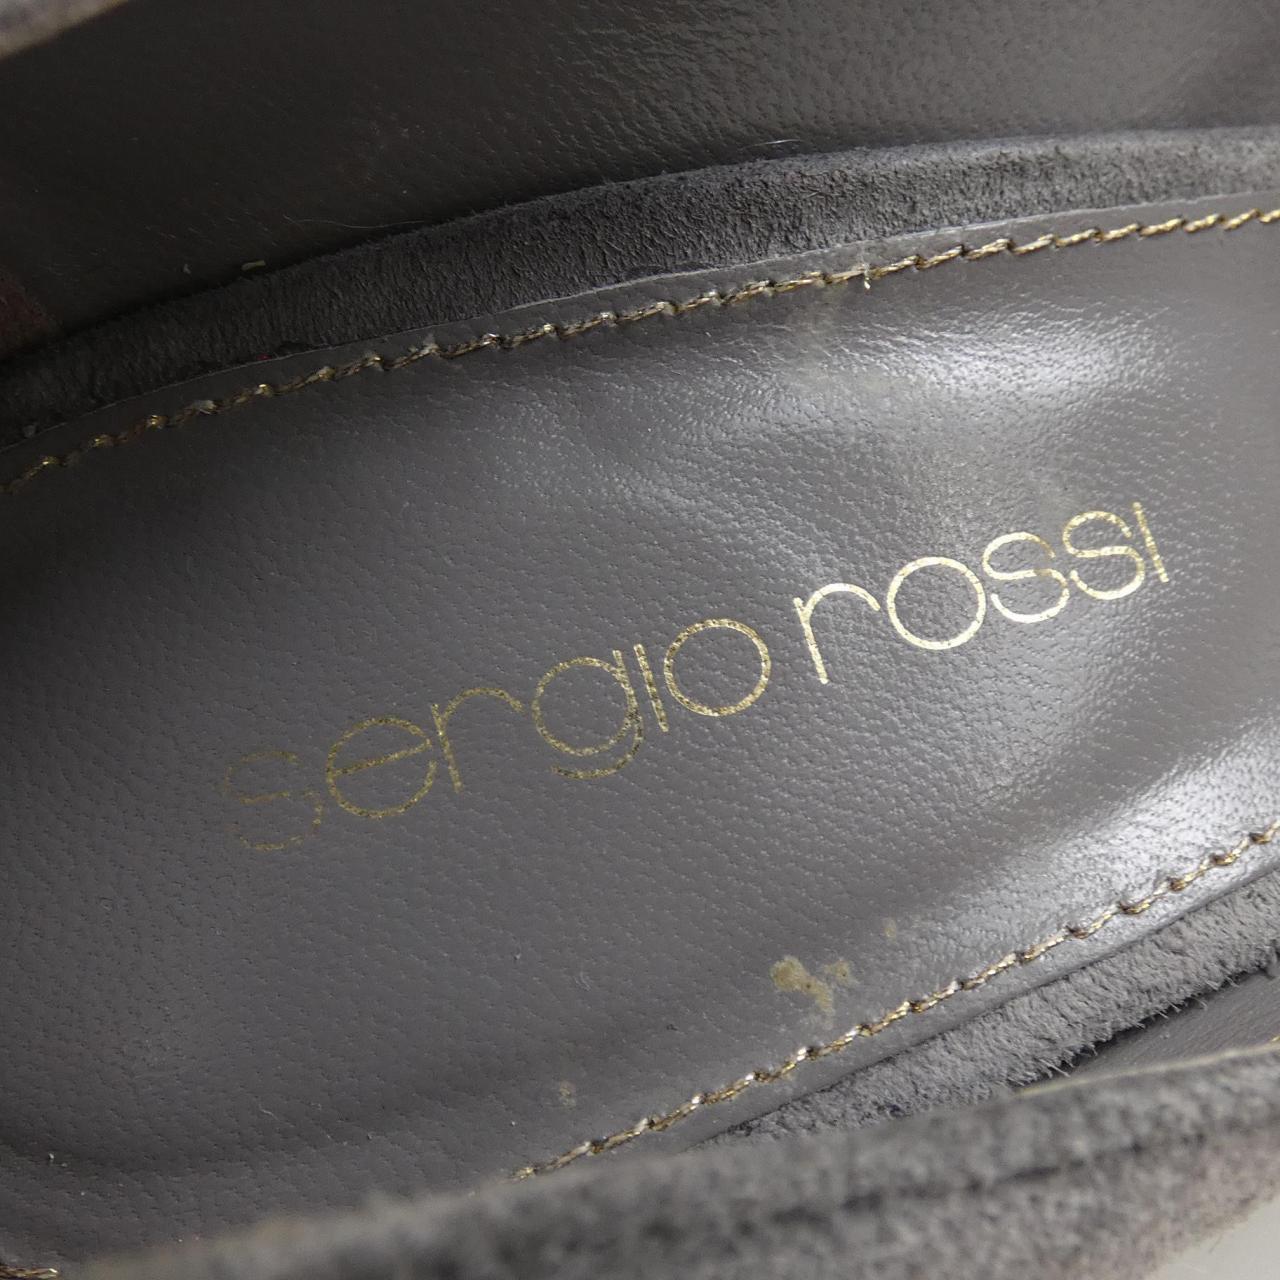 sergio rossi ·羅西 塞爾吉奧·羅西 高跟鞋